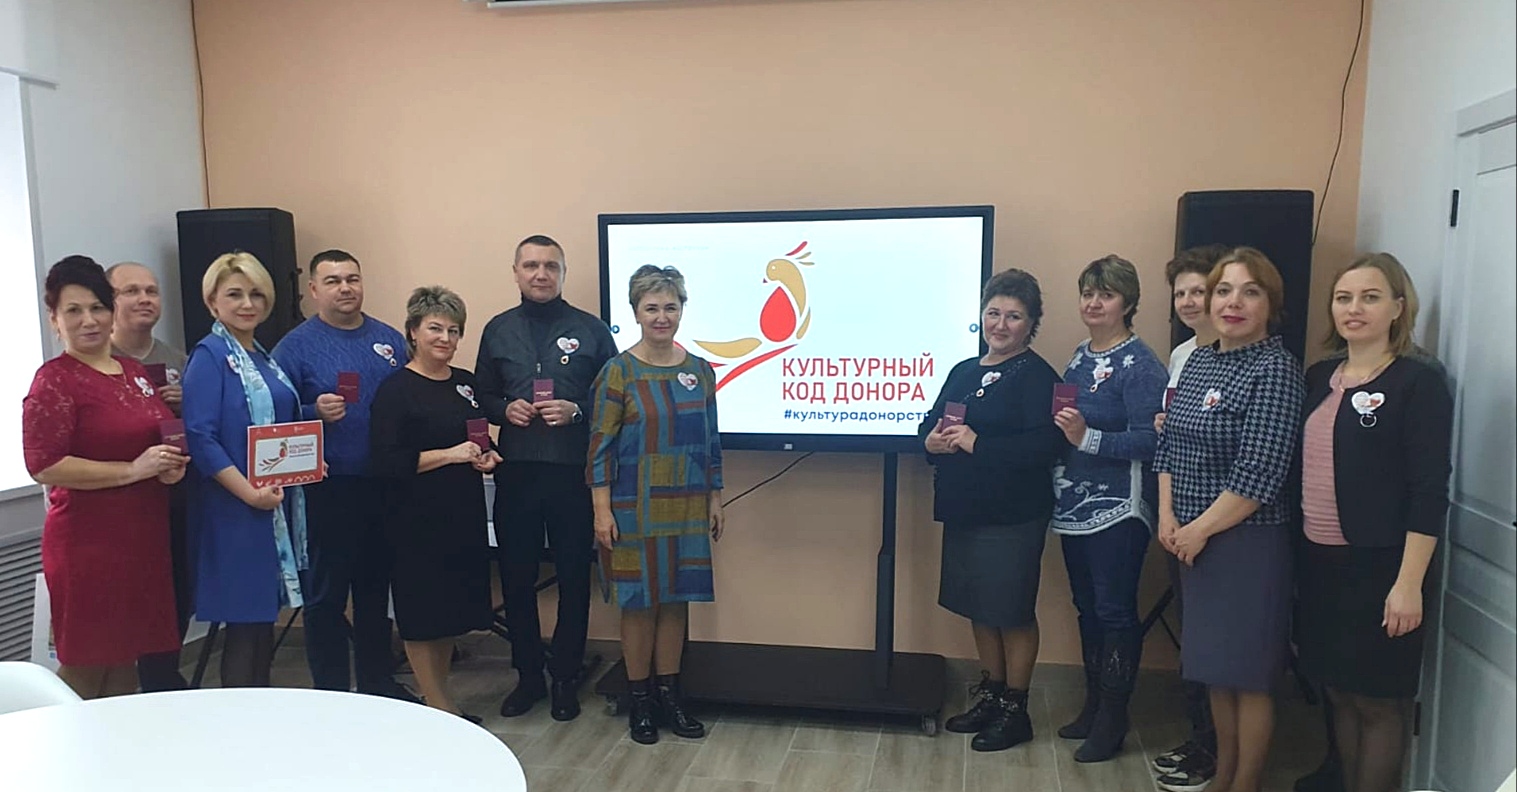 Сегодня чествовали активистов донорского движения Оренбуржья